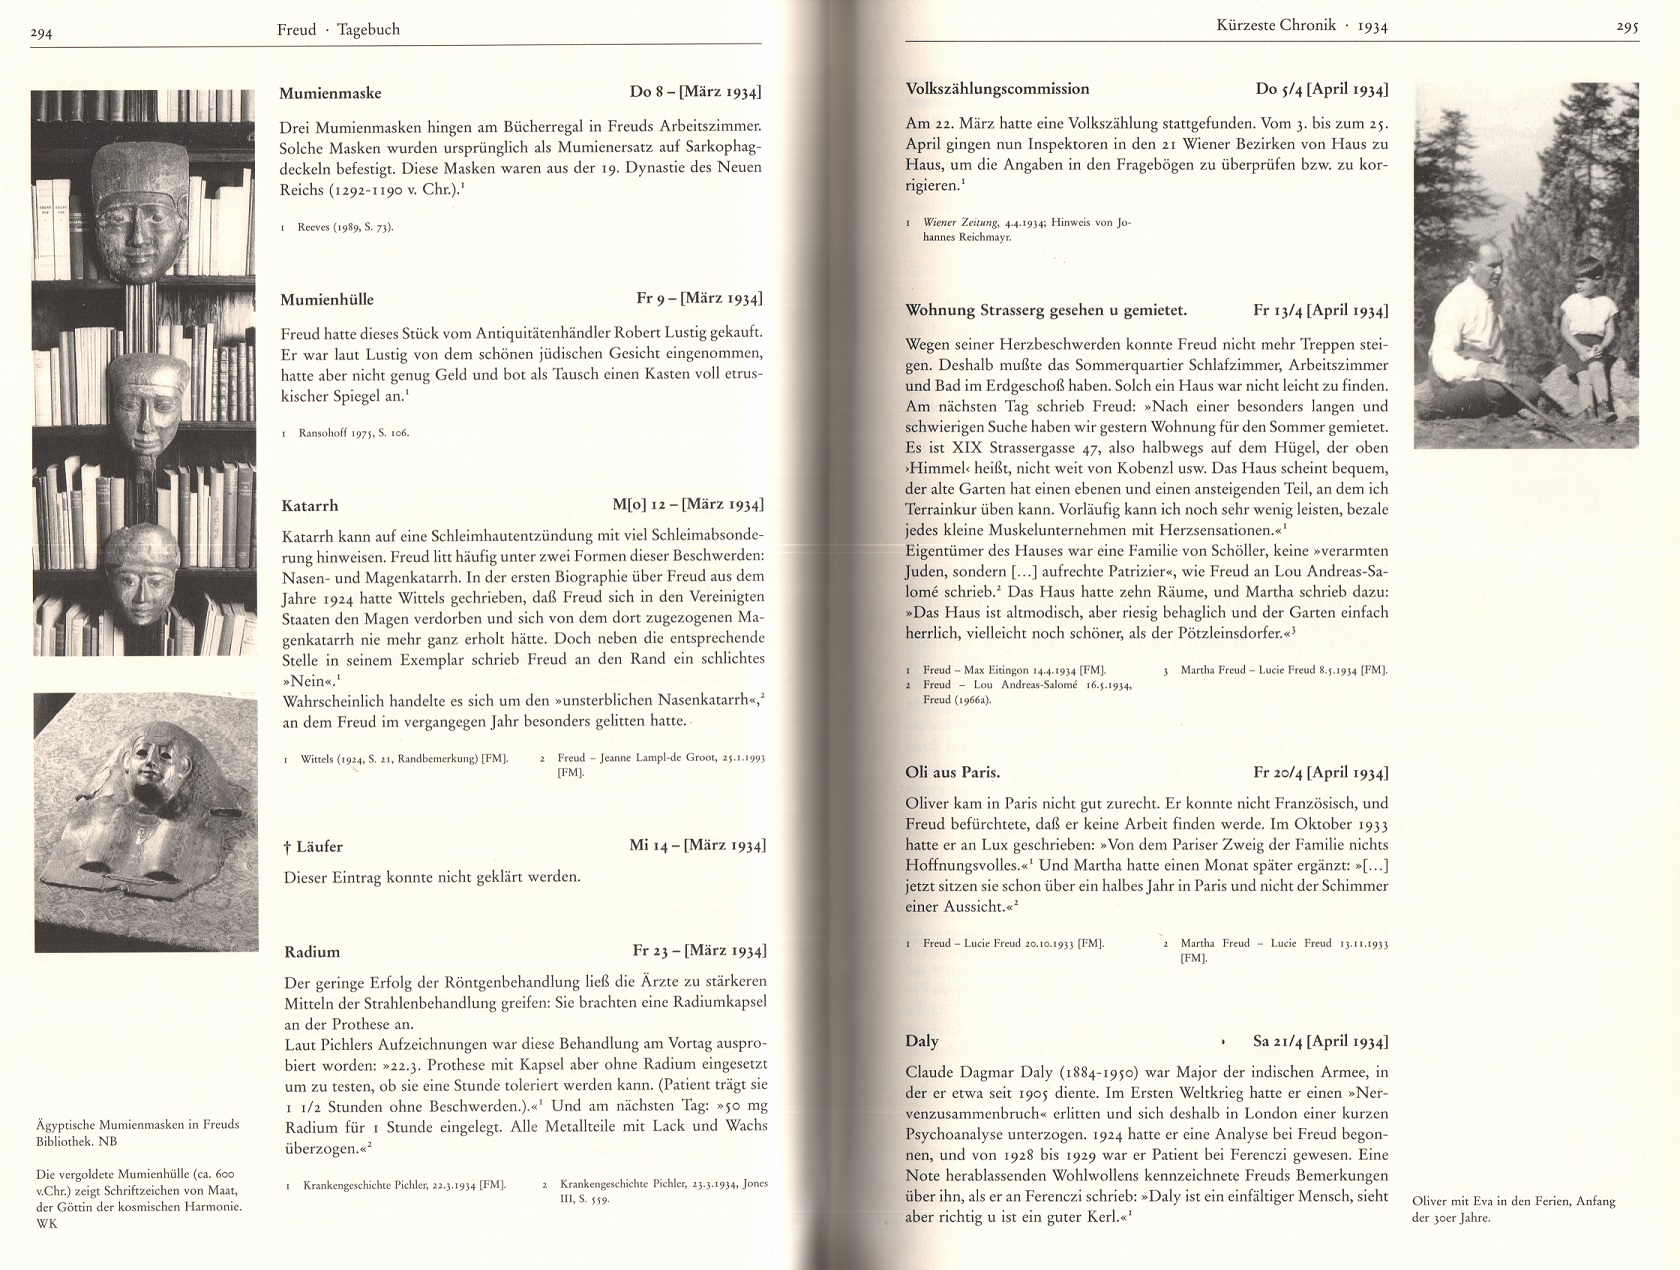 Blick ins Buch: März und April 1934